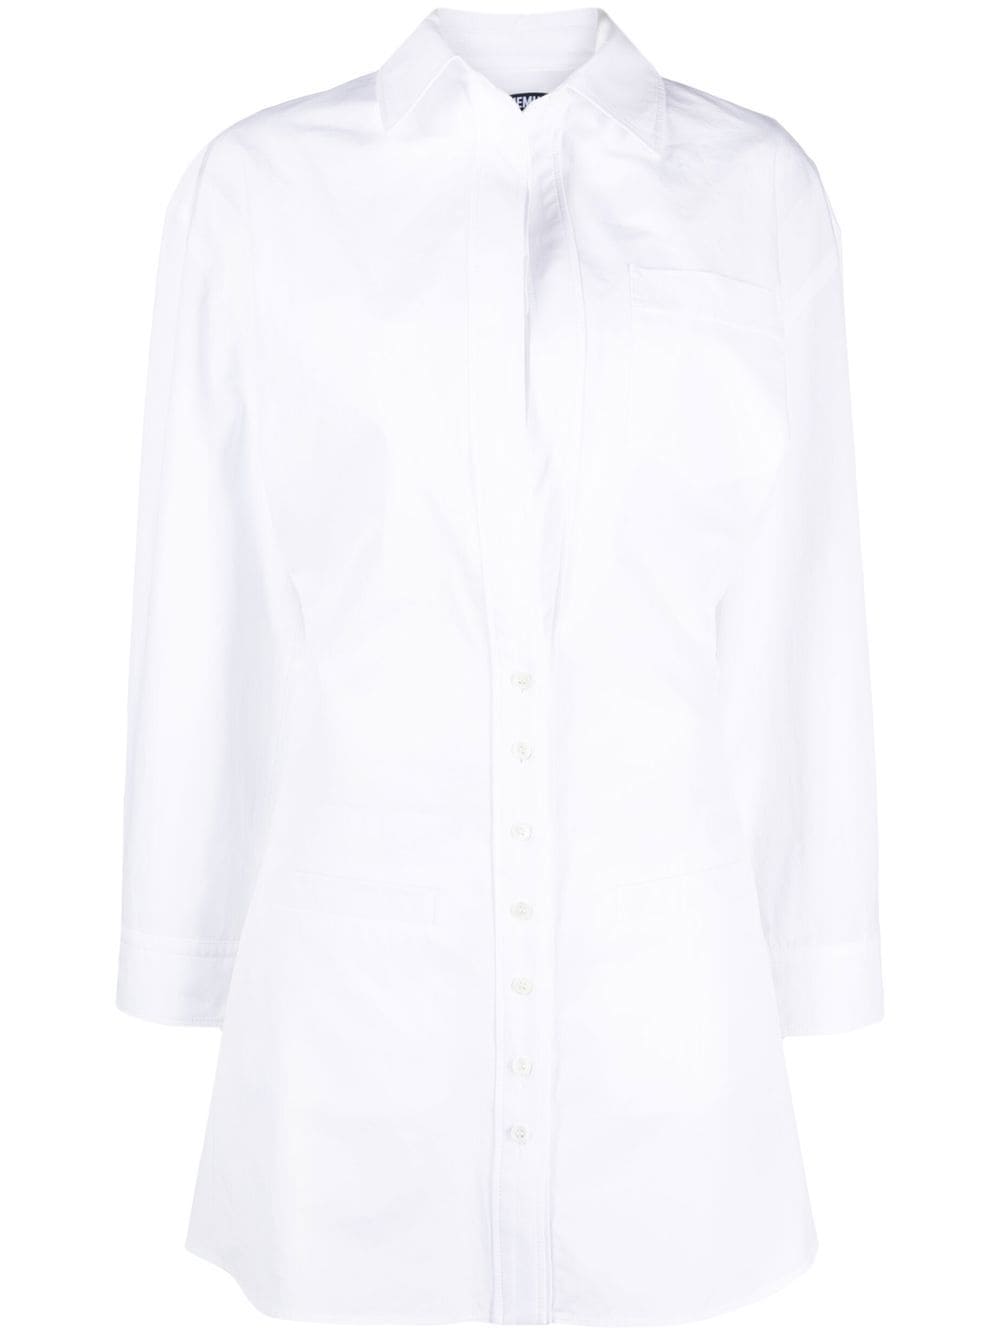 jacquemus robe-chemise la robe baunhilha à design superposé - blanc